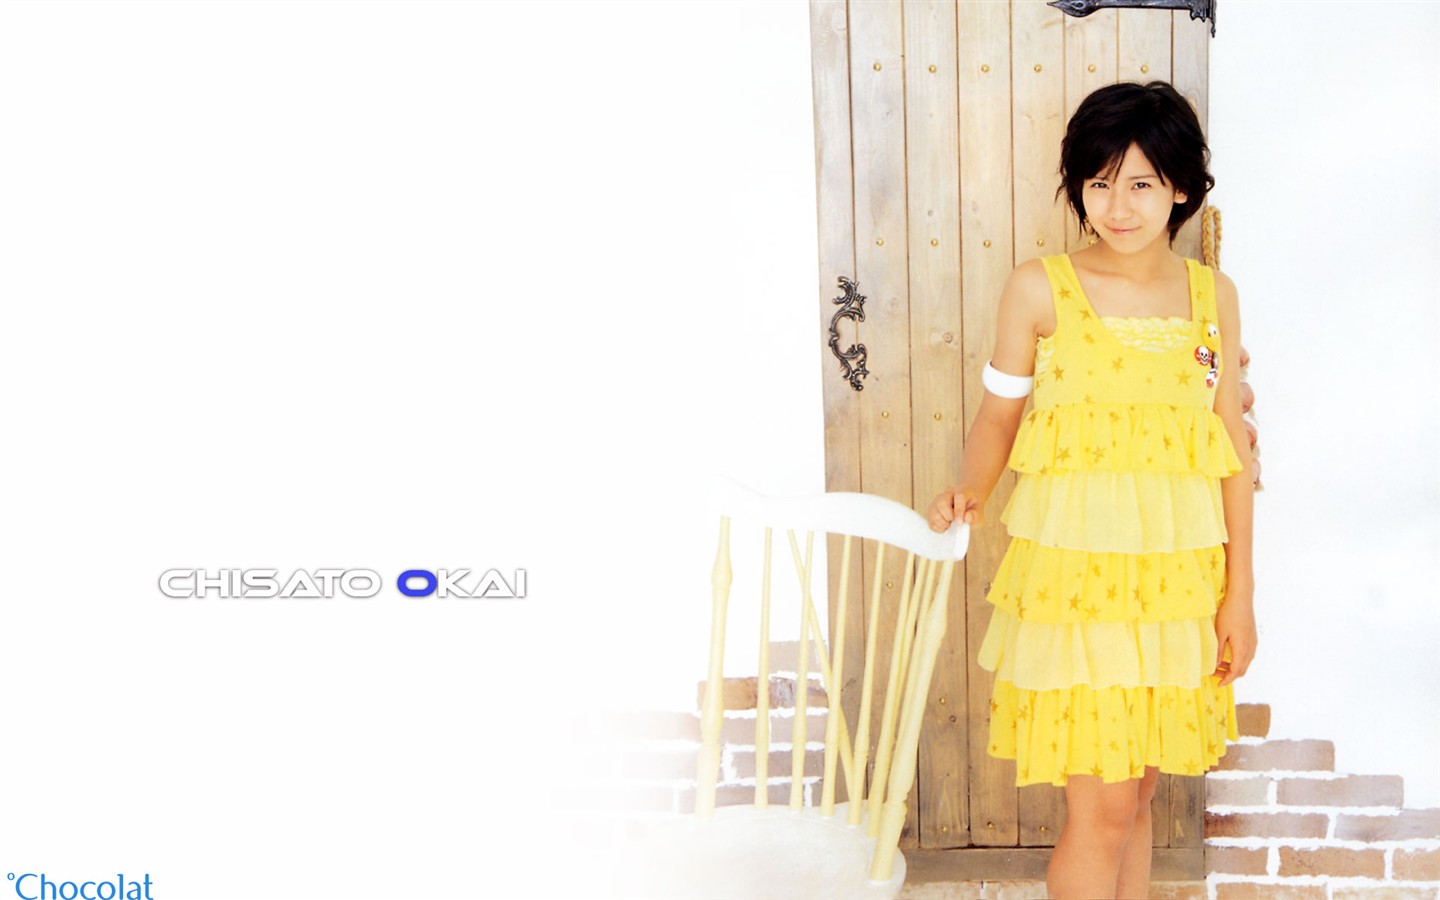 Cute японские портфолио фото красоты #6 - 1440x900